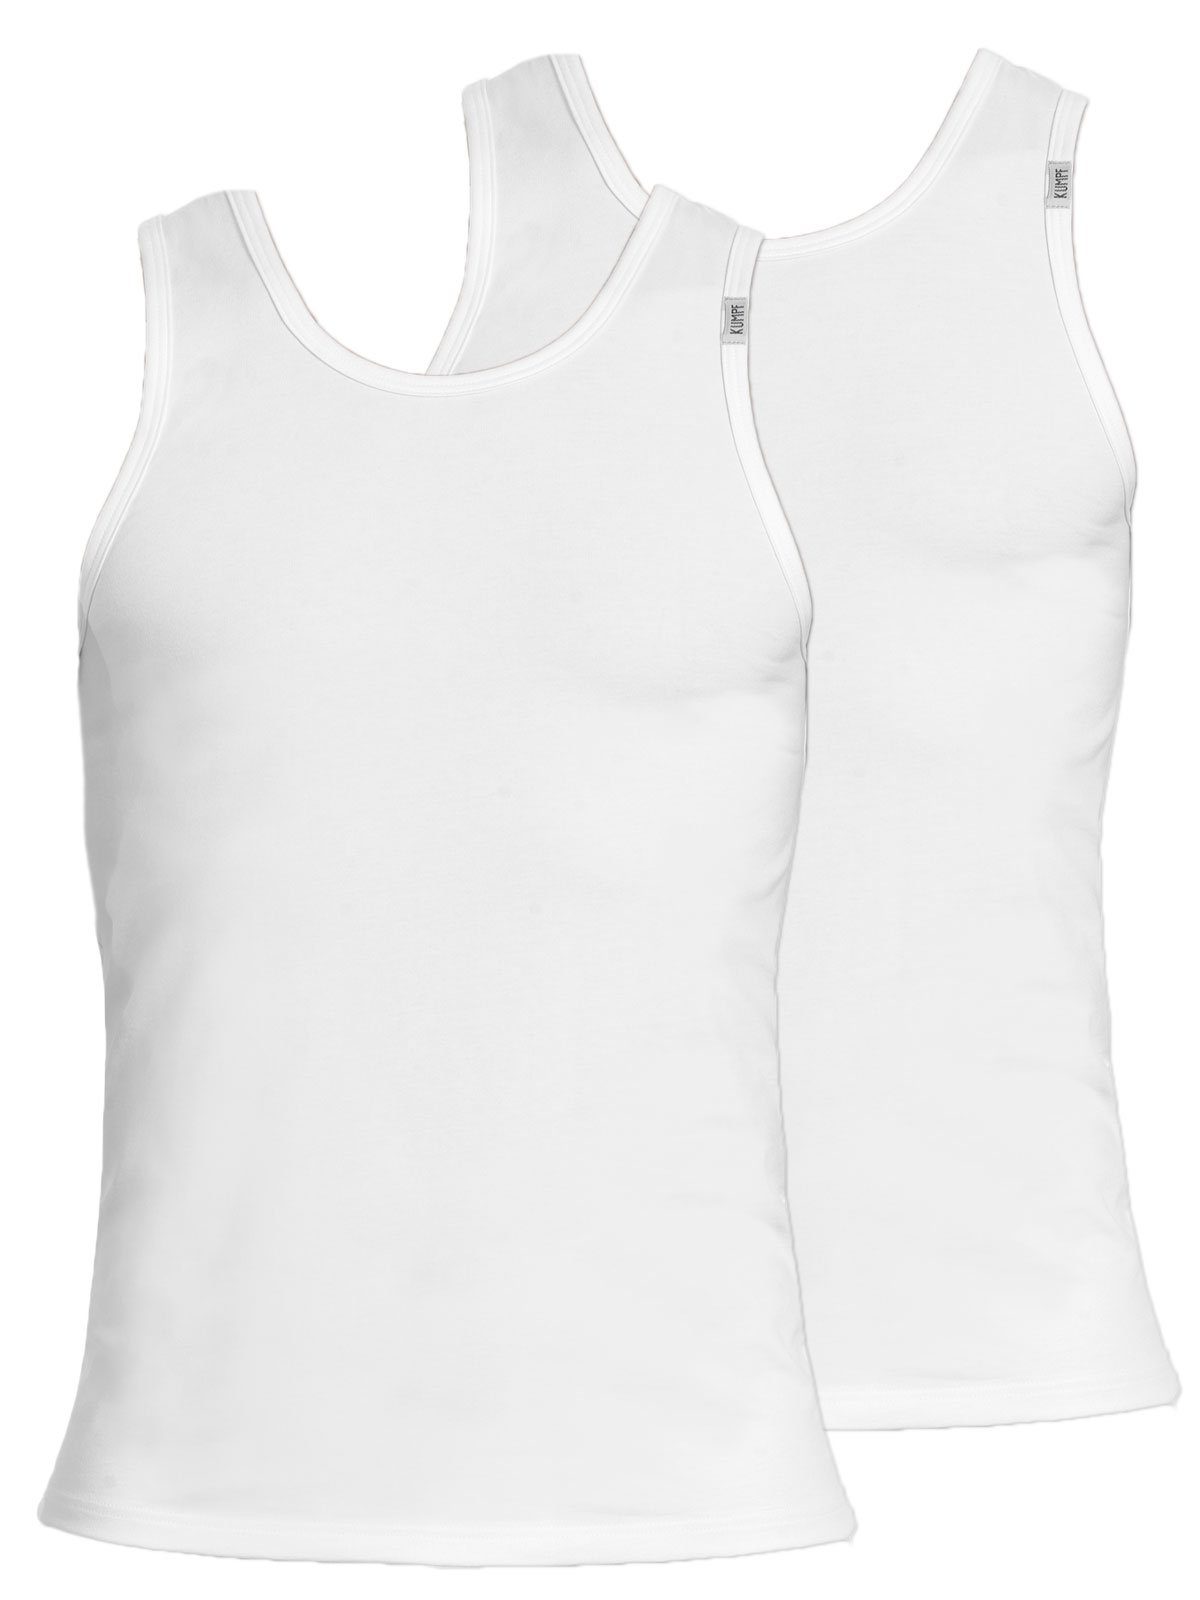 KUMPF Achselhemd 2er Sparpack Herren Unterhemd Bio Cotton (Spar-Set, 2-St) hohe Markenqualität weiss